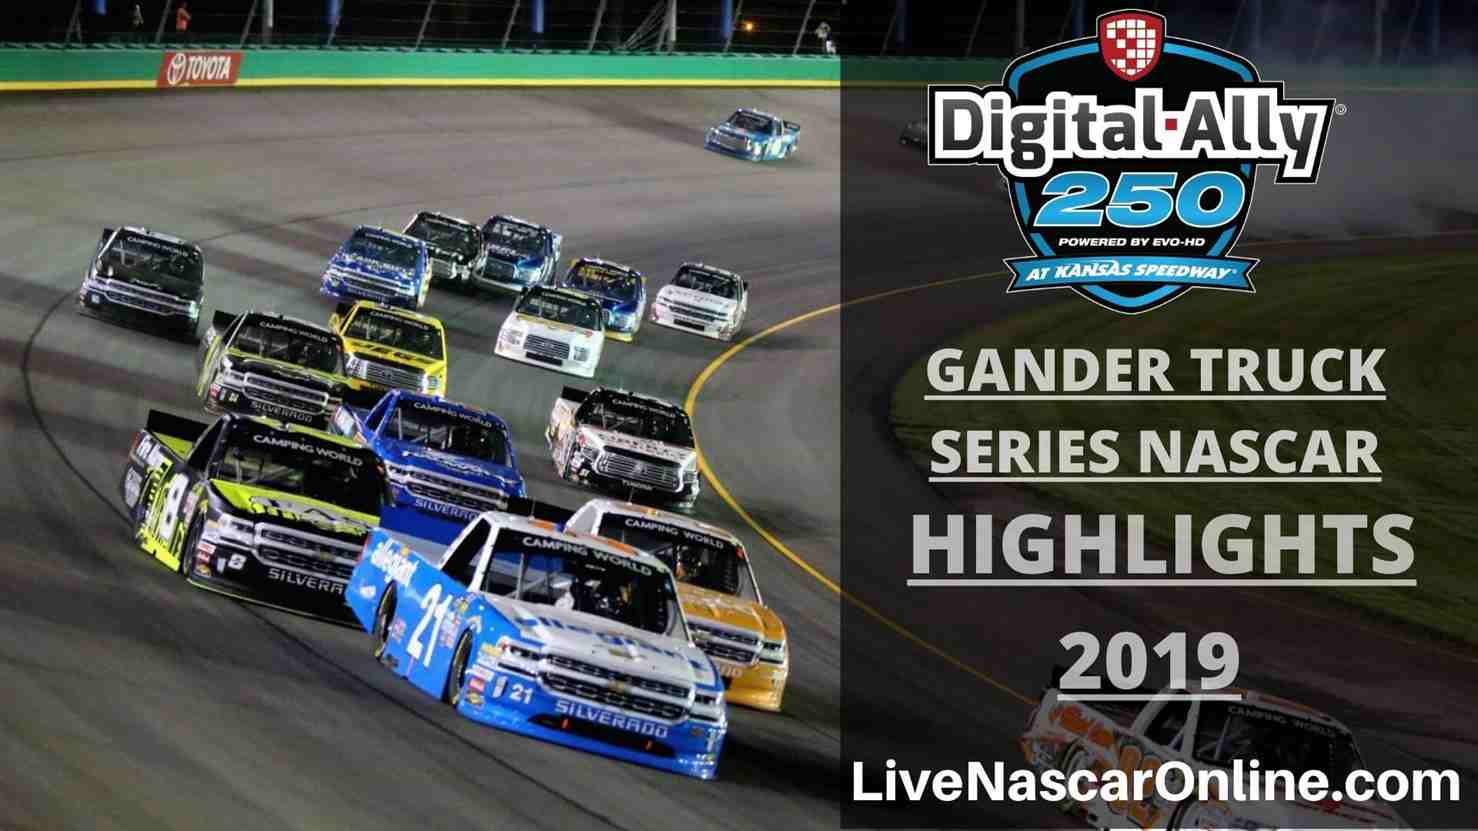 DIGITAL ALLY 250 NASCAR GANDER TRUCK HIGHLIGHTS 2019